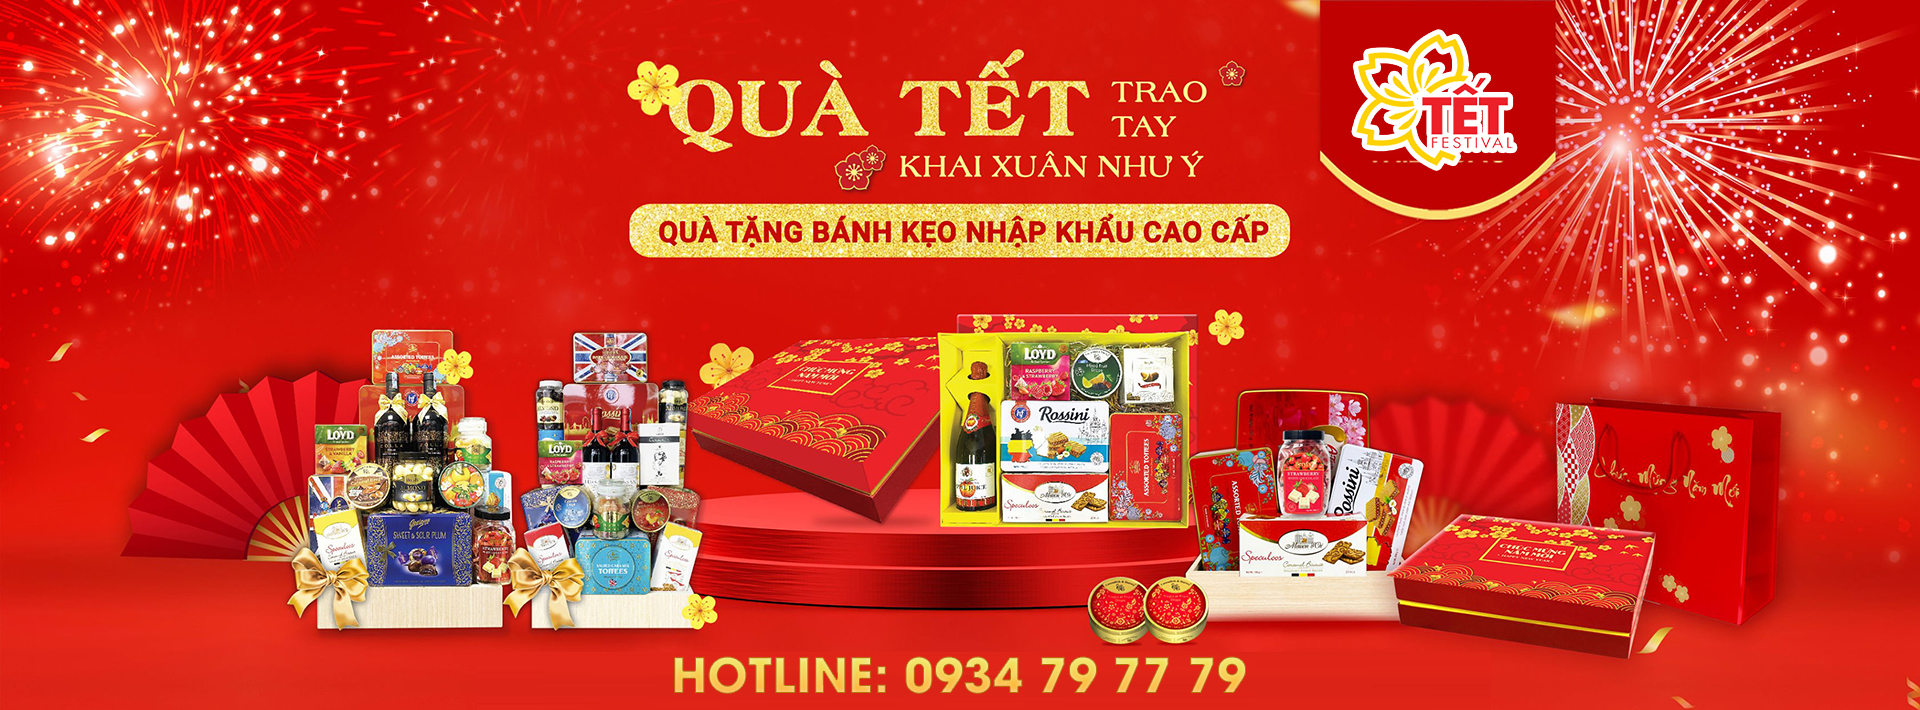 Hộp quà Tết Sài Gòn Giá Rẻ - Quatetsaigon.com